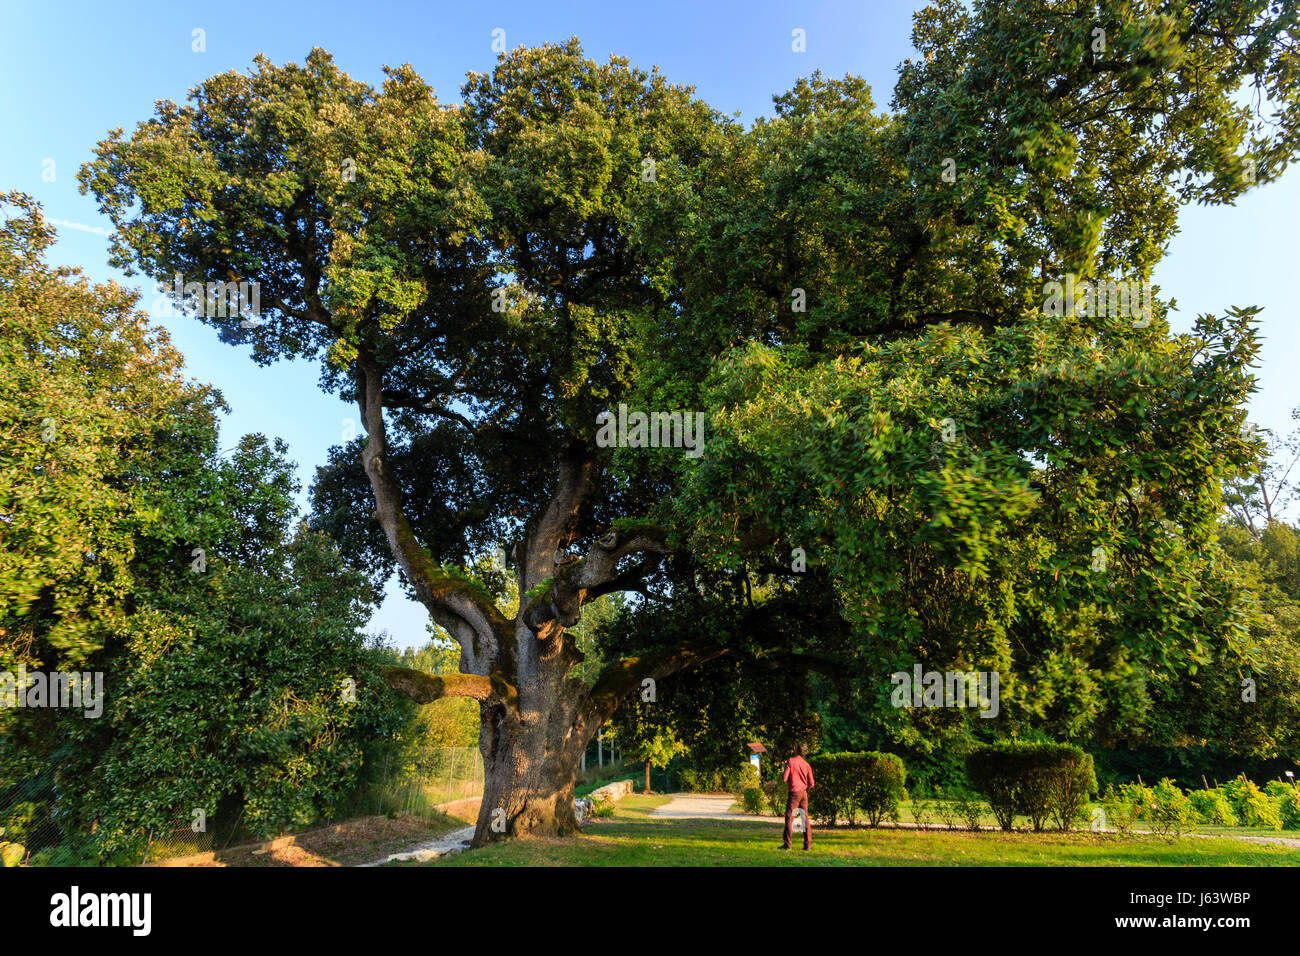 France, Charente, Cherves Richemont, chêne de Stockholm (Quercus ilex) quatre siècles vieux classé arbre remarquable dans le vignoble de Charentes Conservatoire Banque D'Images